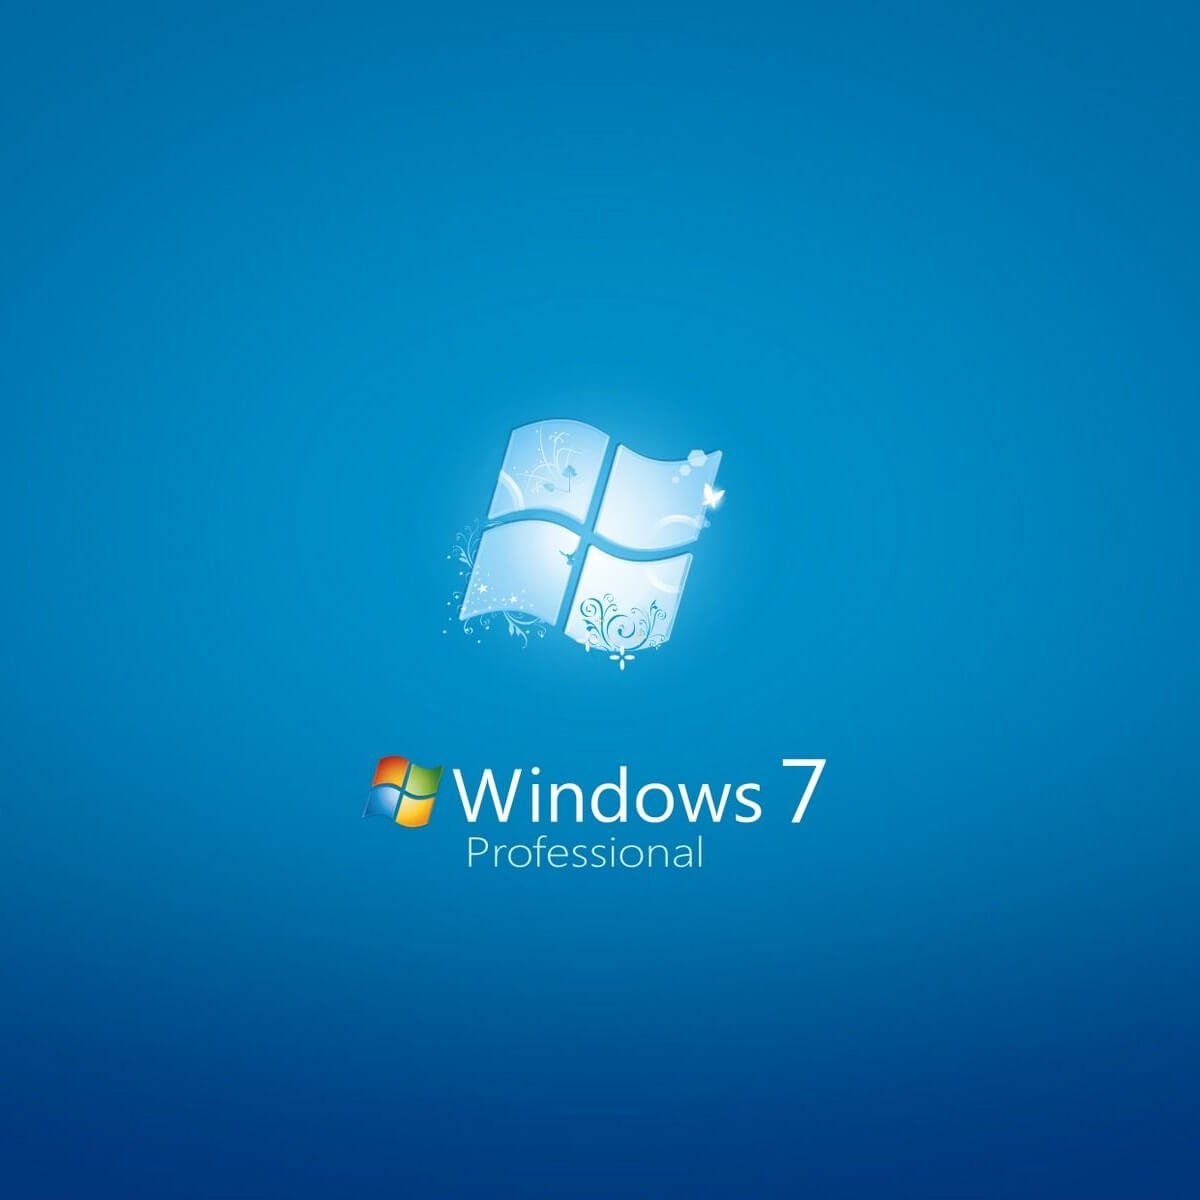 How Do I Backup Windows 7 Before Upgrading To Windows 10